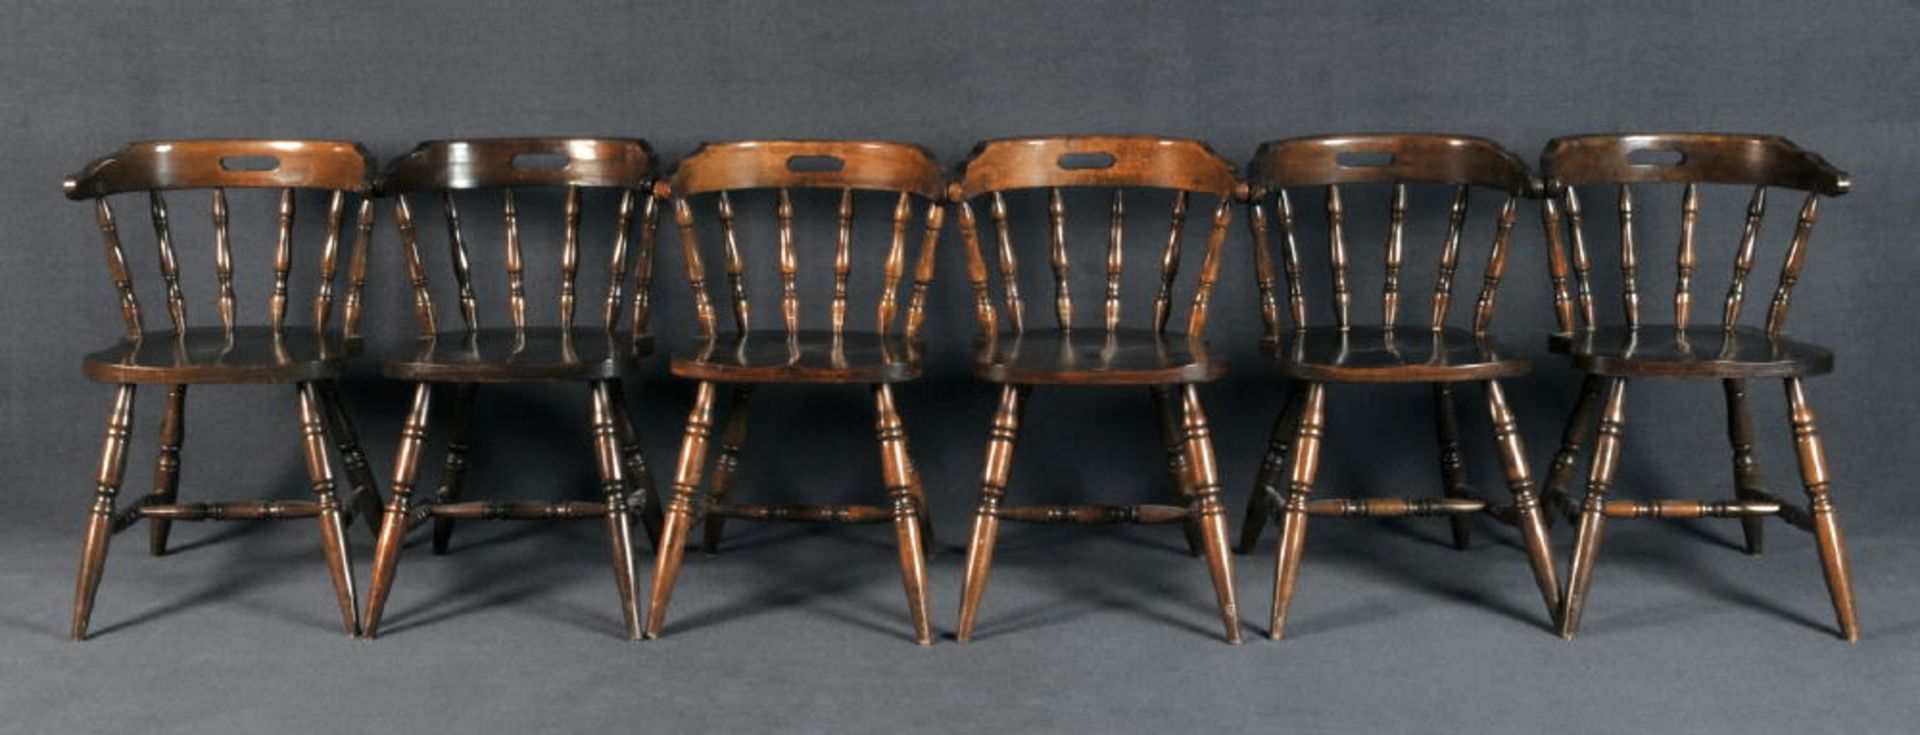 Windsorstühle, 6 StückHartholz, dunkel gebeizt, 4 gedrechselte, ausgestellte Beine mit